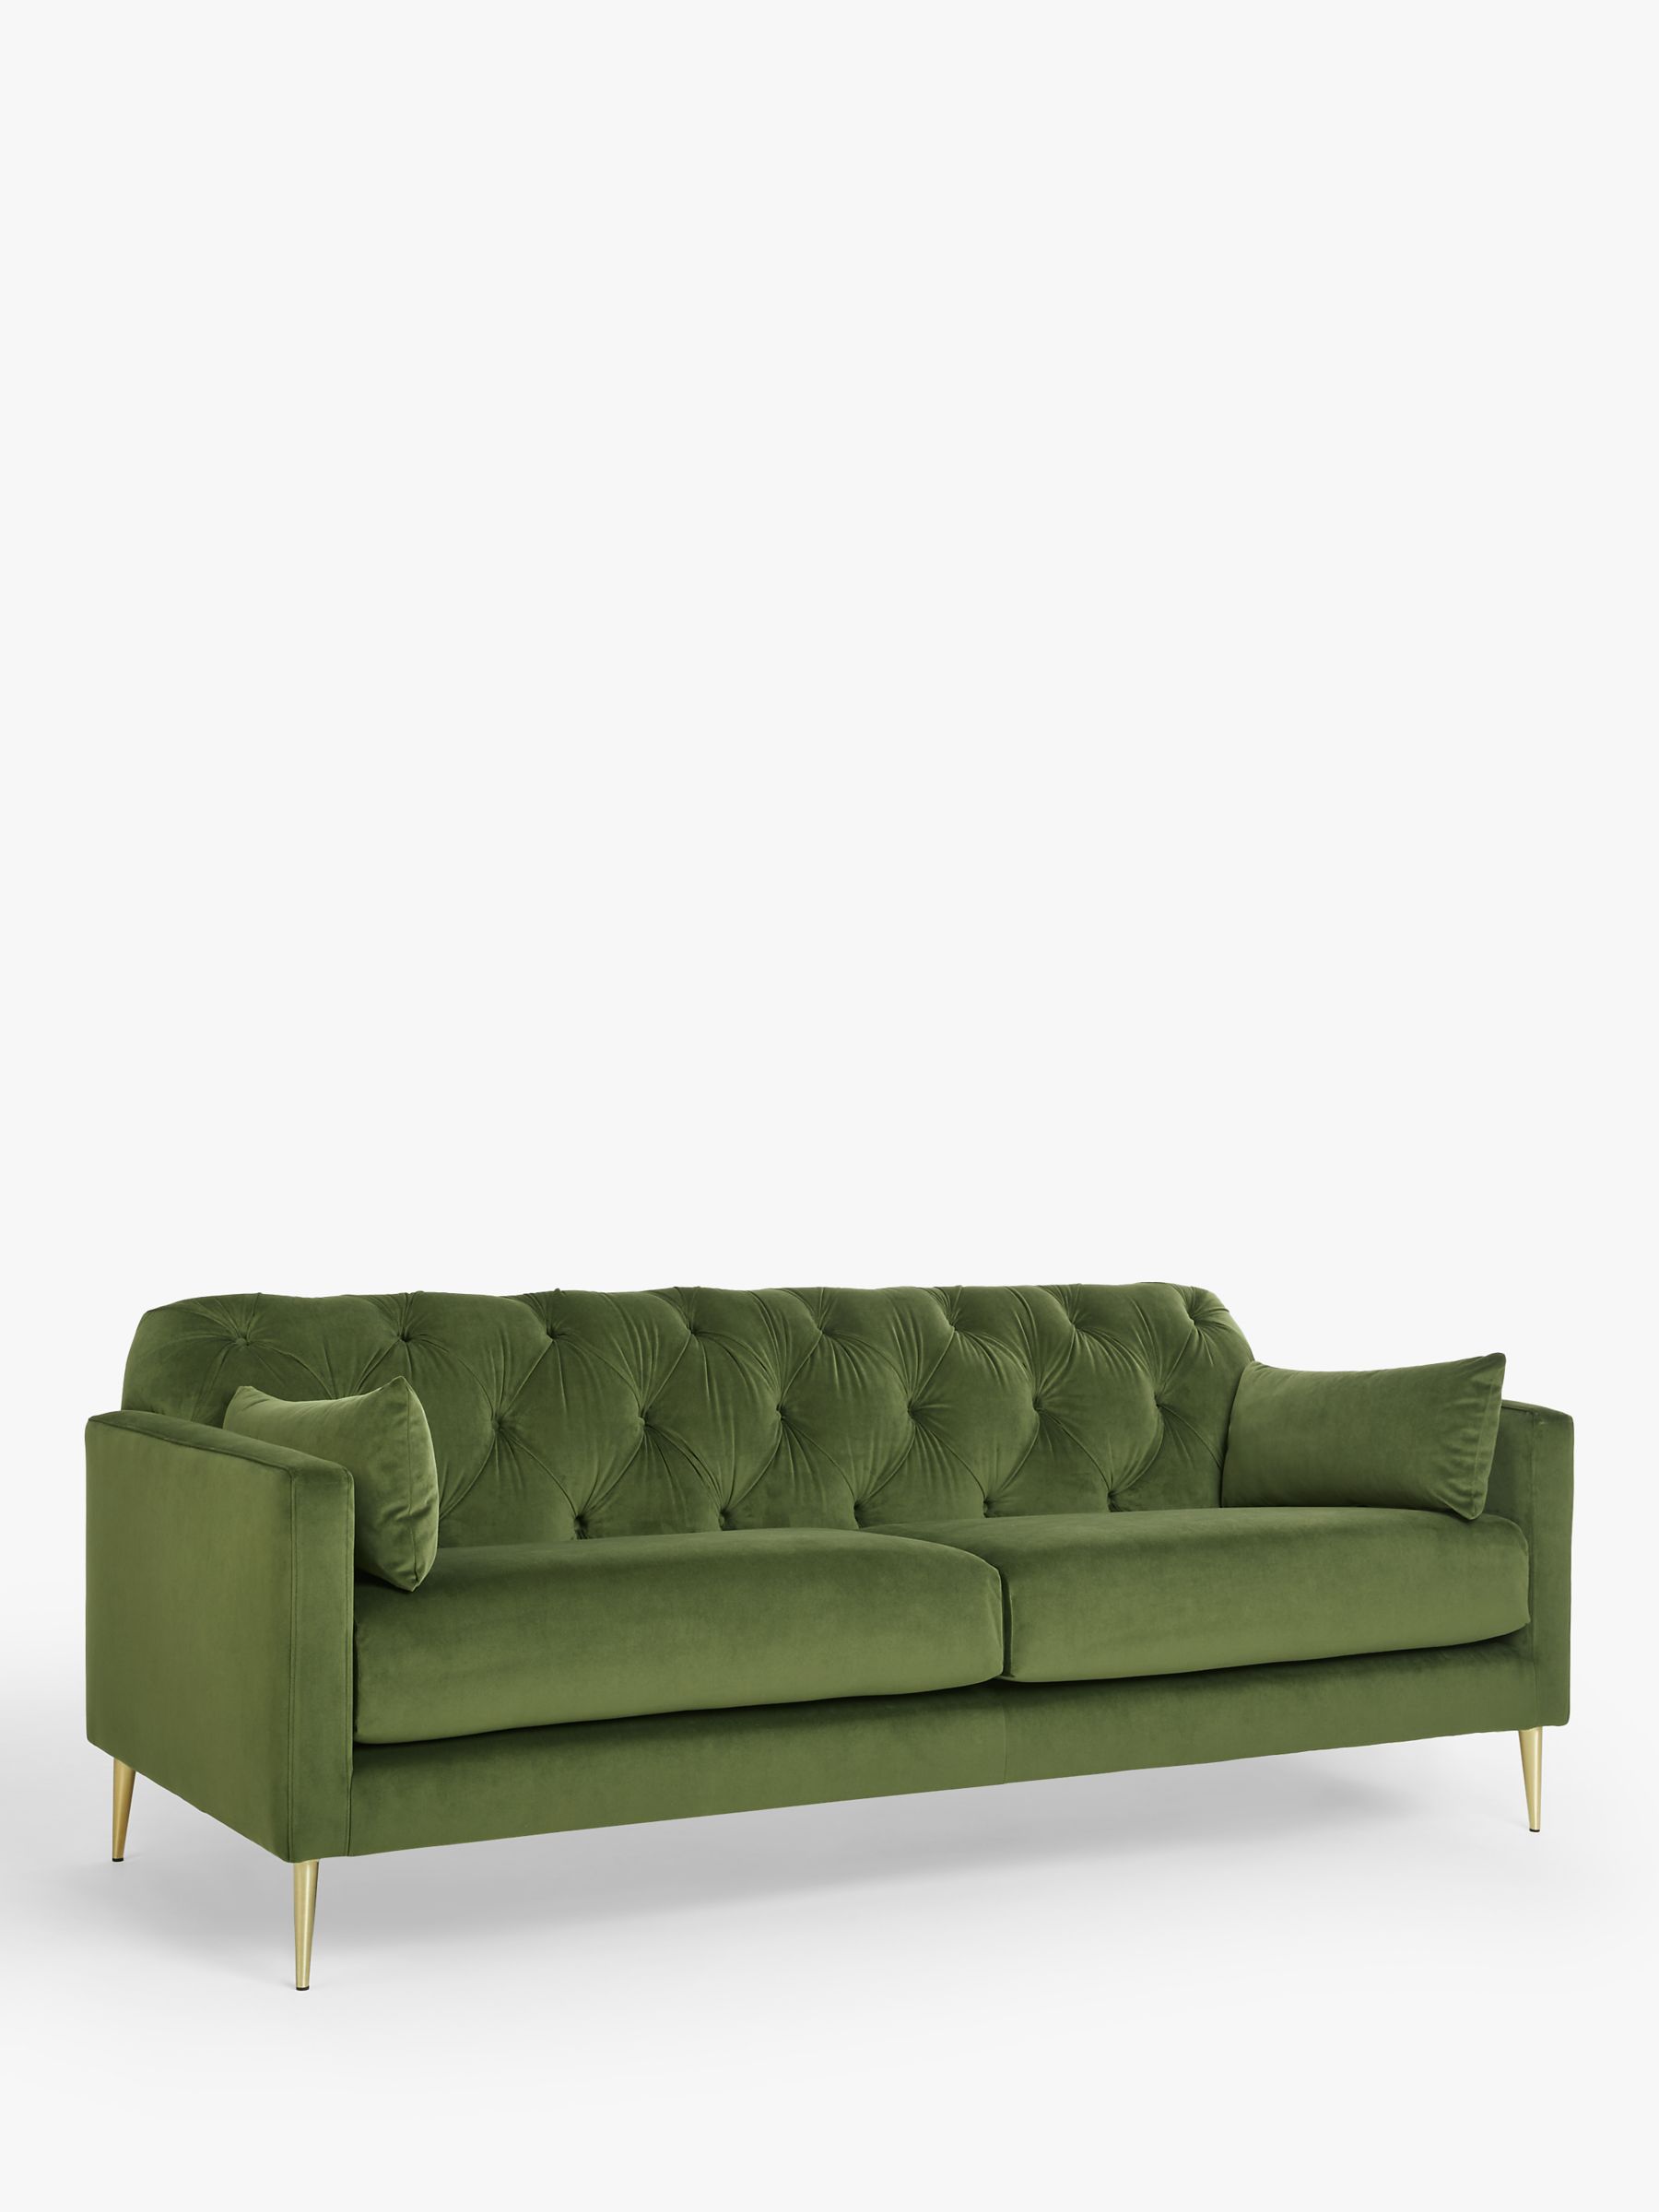 Mendel Range, Swoon Mendel Large 3 Seater Sofa, Gold Leg, Fern Green Velvet